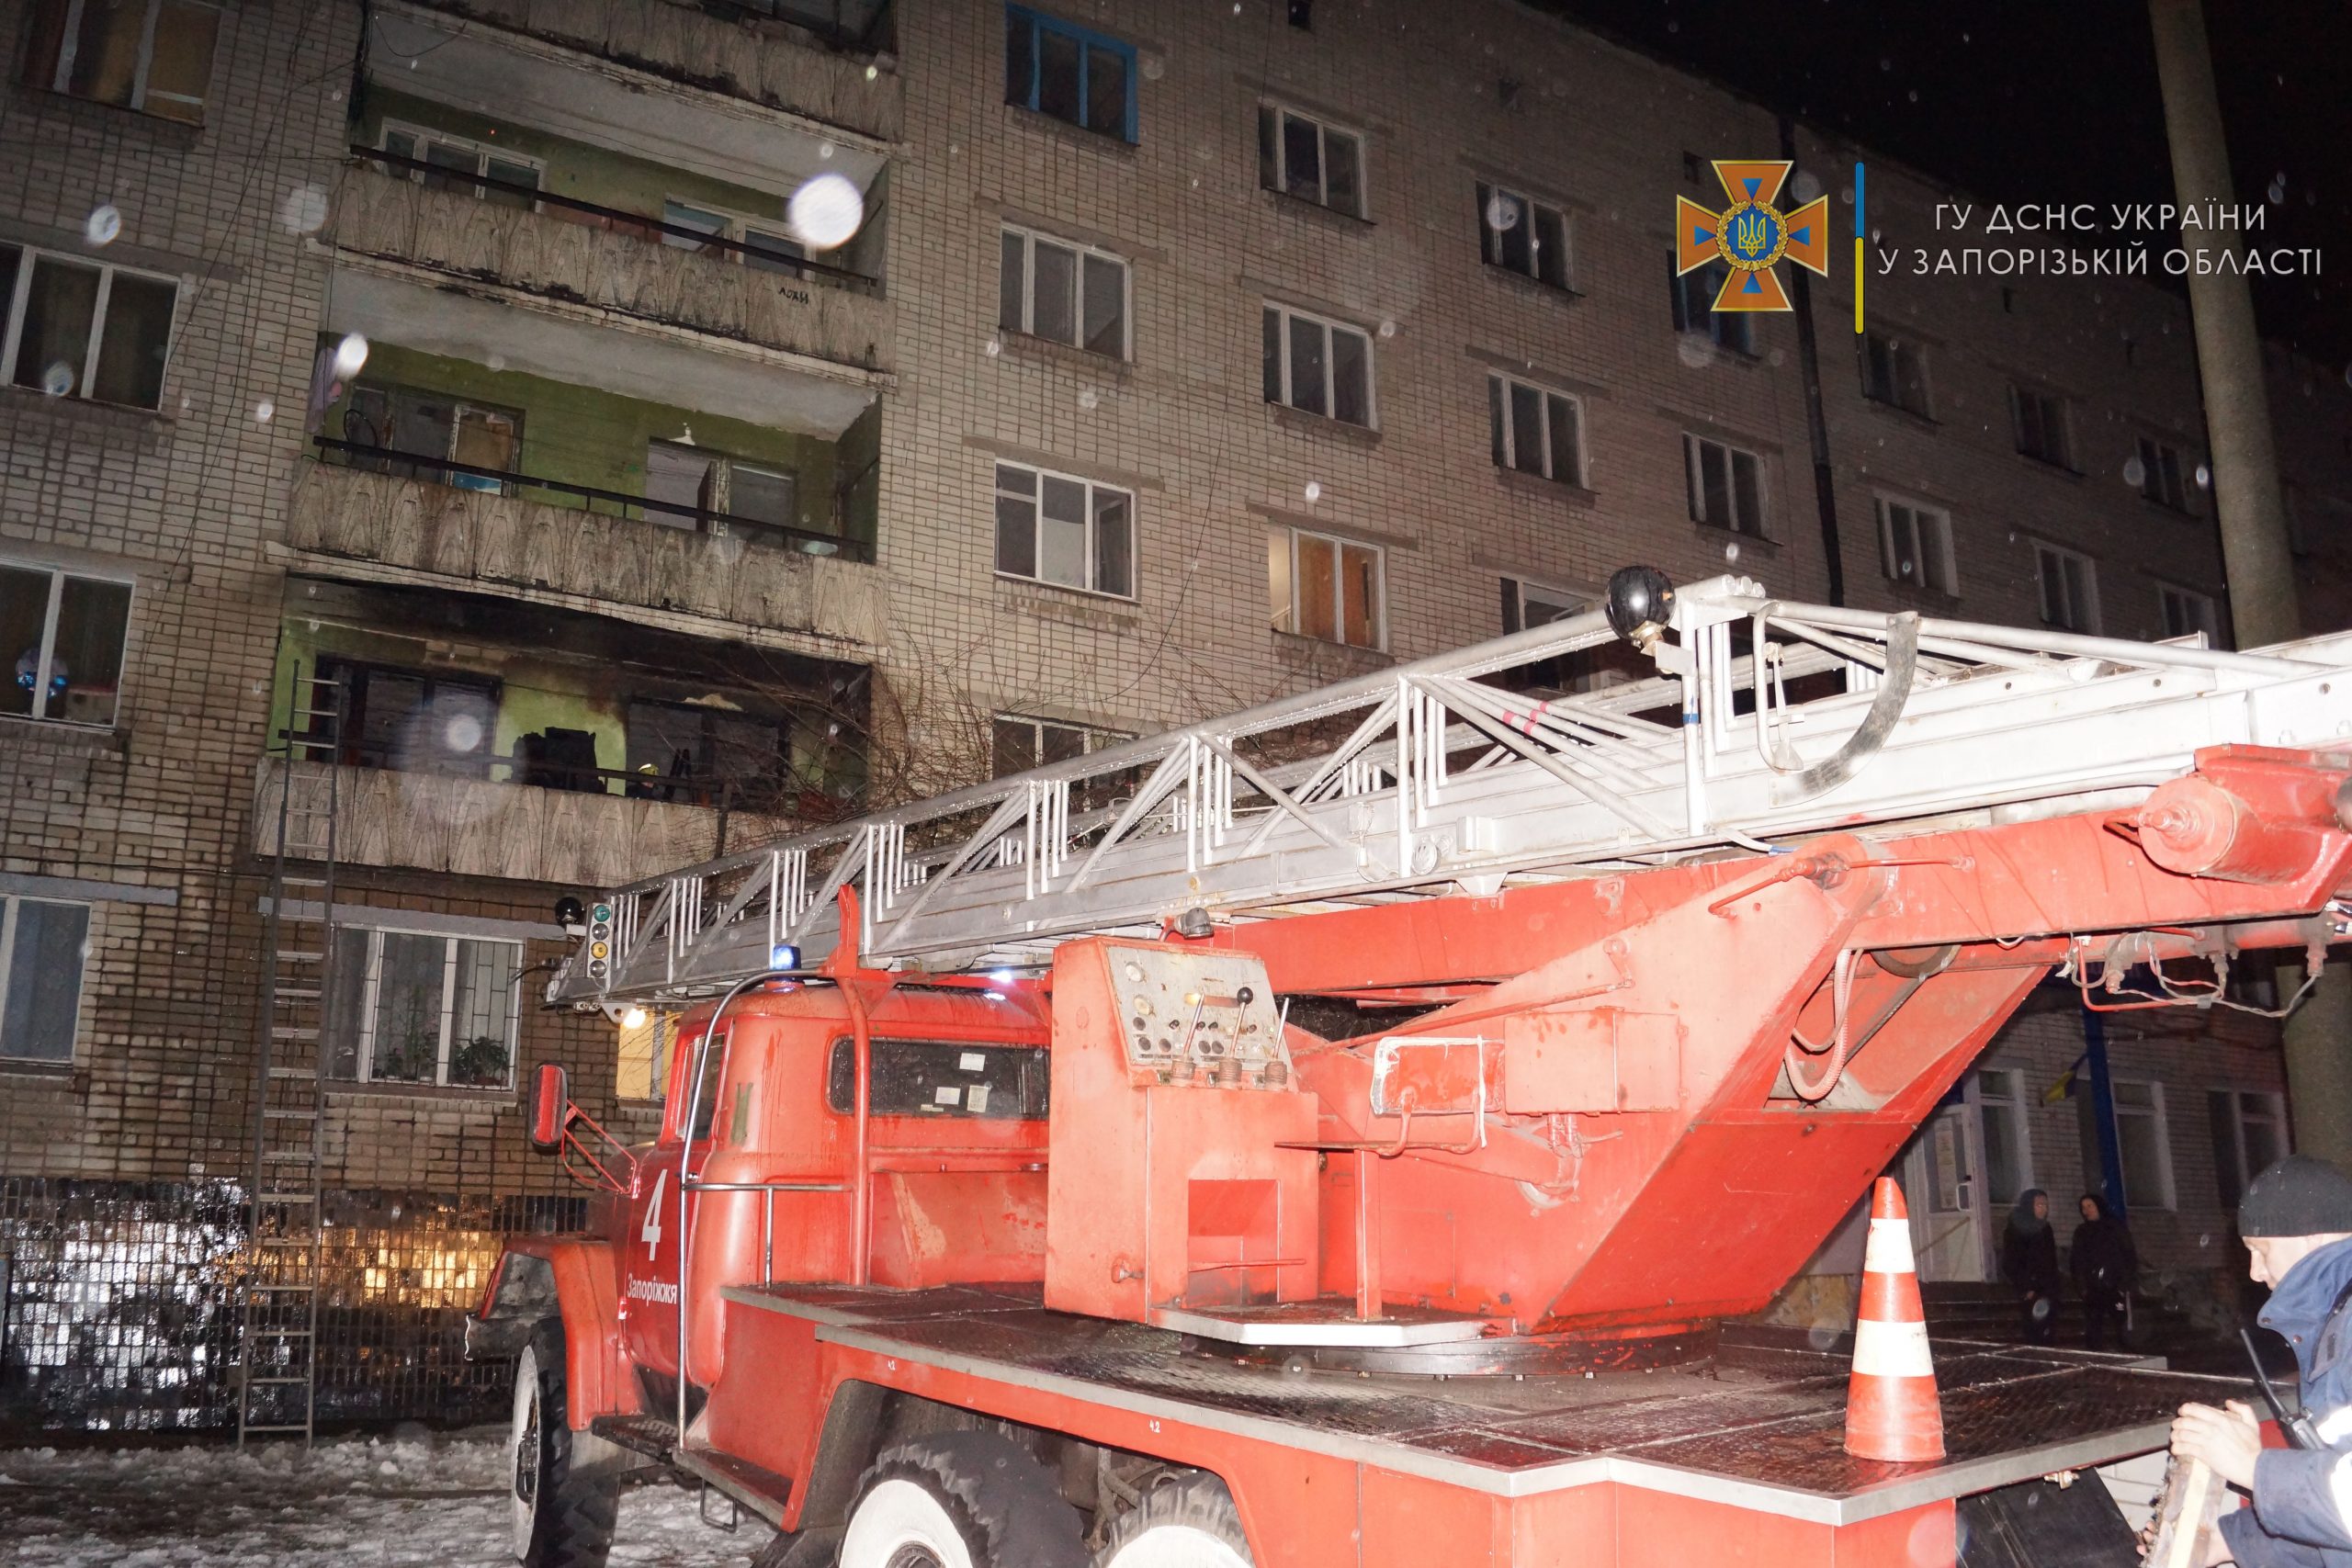 В запорожском общежитии произошел пожар: ВИДЕО спасения людей (ФОТО)